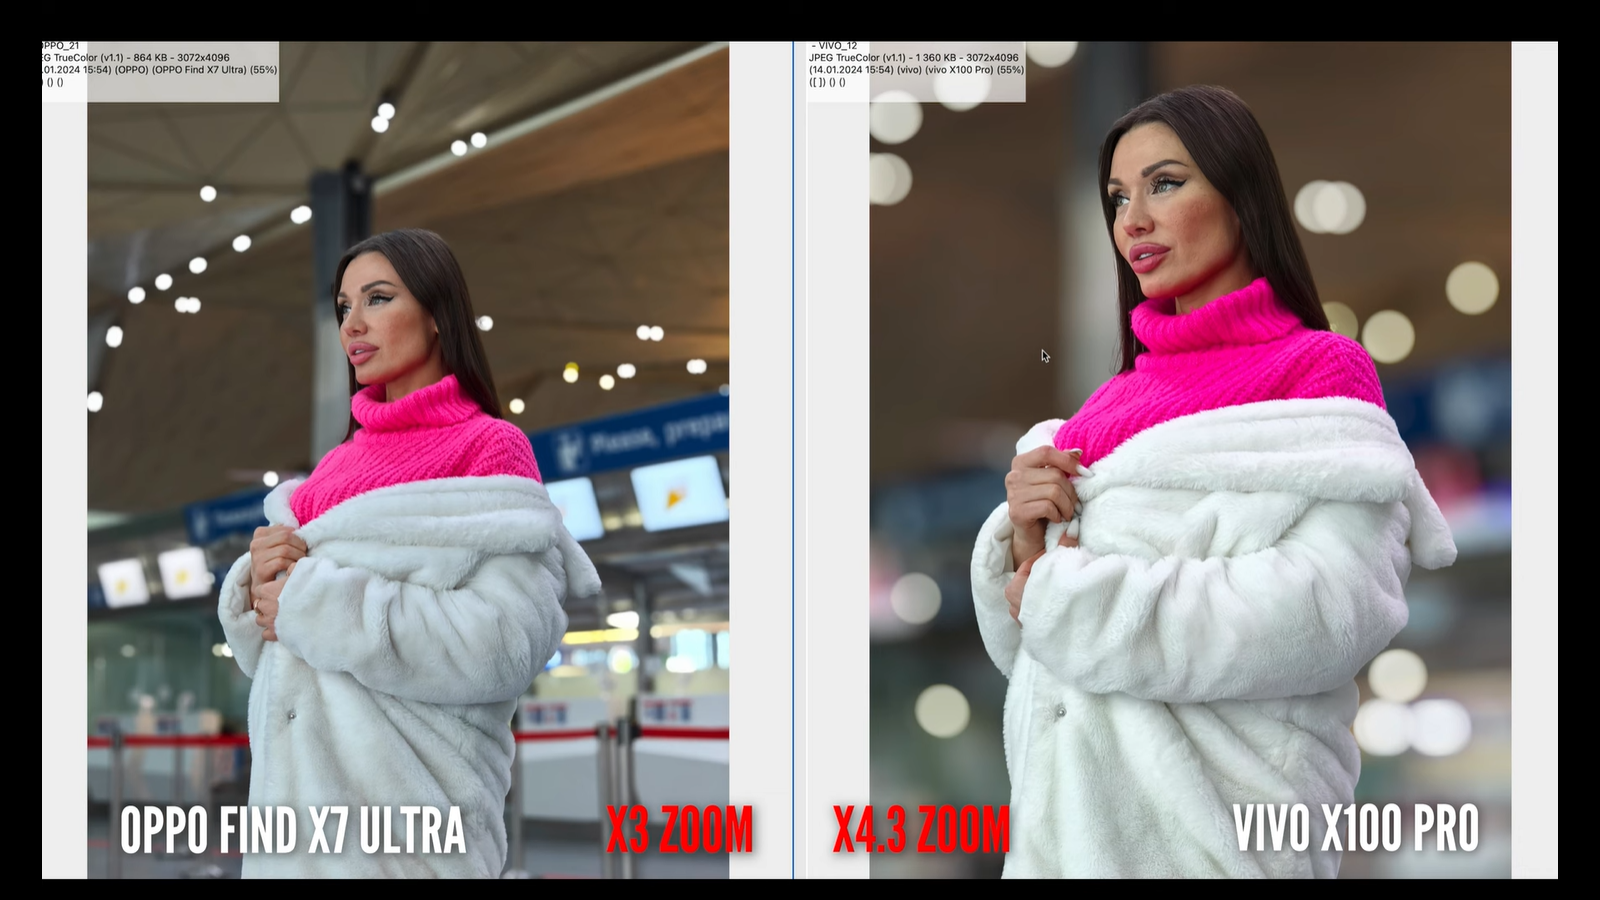 Китайские смартфоны с лучшими камерами - Vivo X100 Pro и Oppo Find X7 Ultra - сравнили15